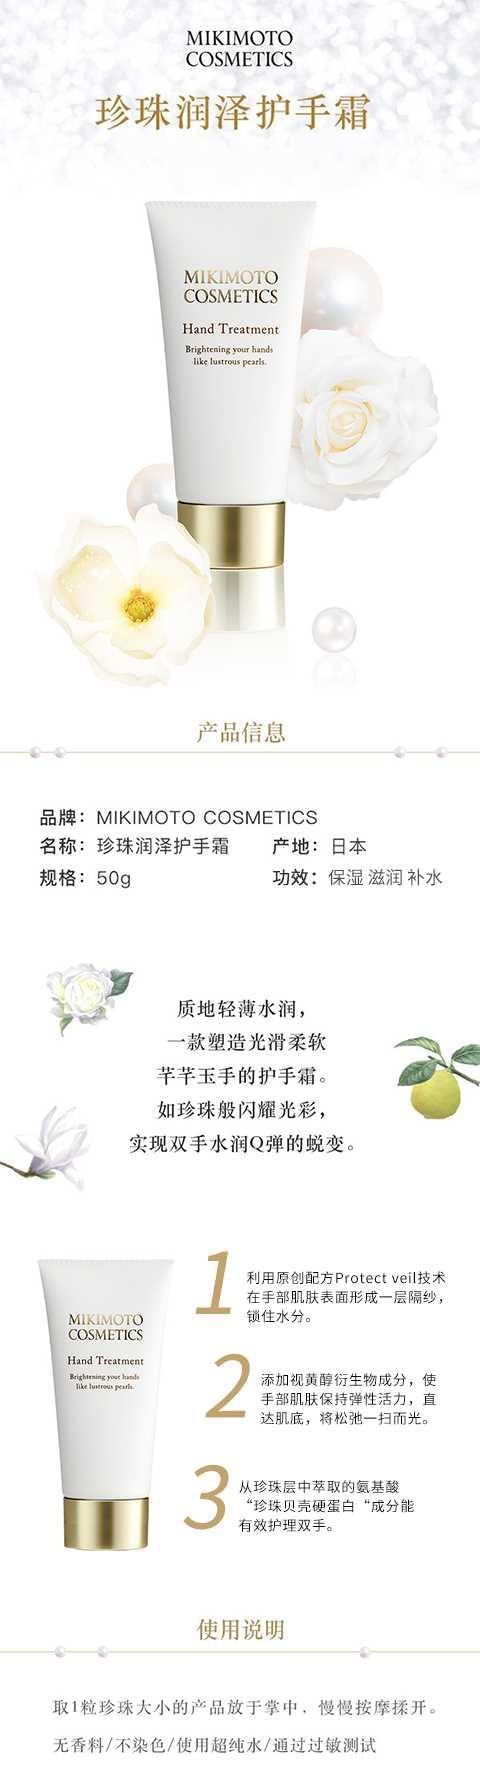 【日本直邮】MIKIMOTO COSMETICS御木本 珍珠润泽修护提亮保湿滋养护手霜50g